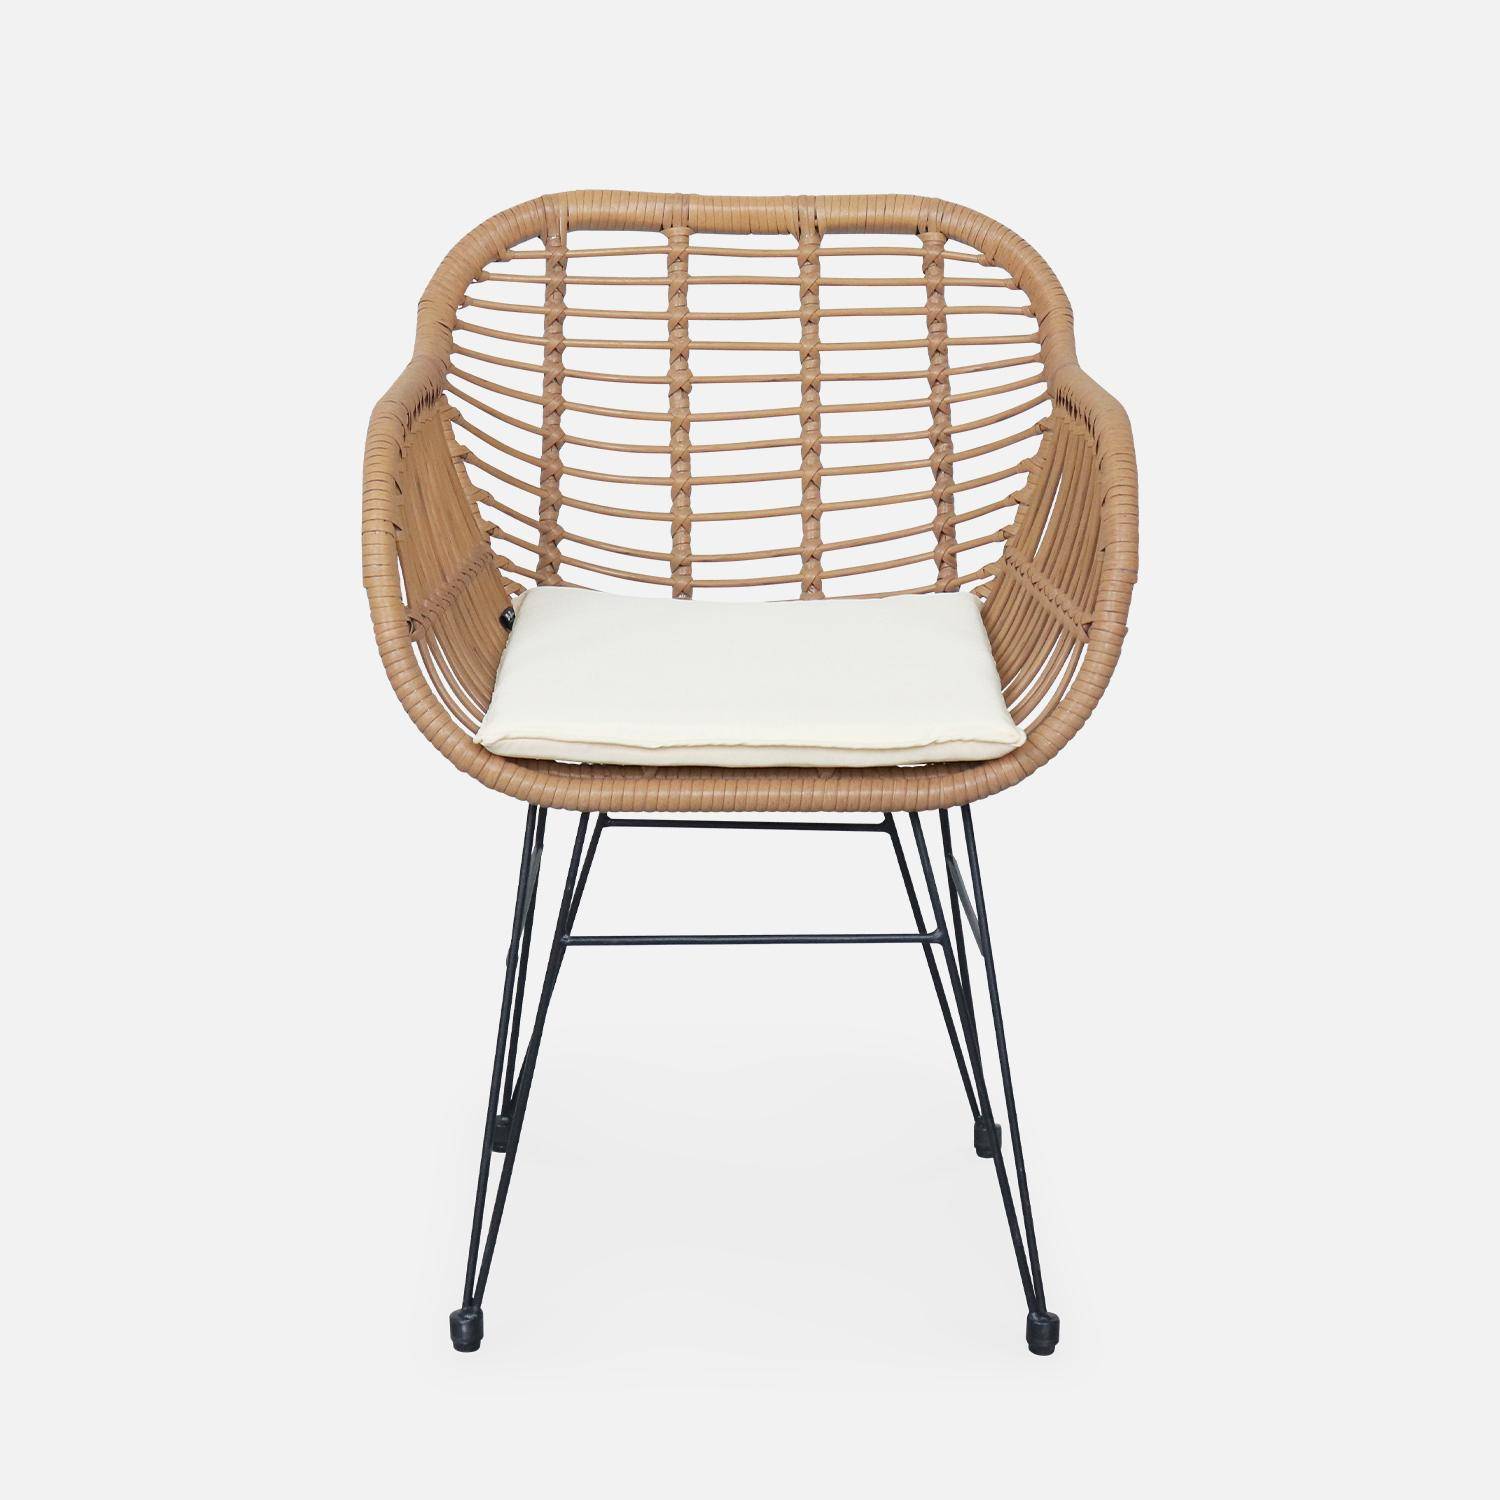 Set van 2 wicker stoelen met bamboe effect, zwart metalen frame, afneembare hoezen, beige kussen Photo6